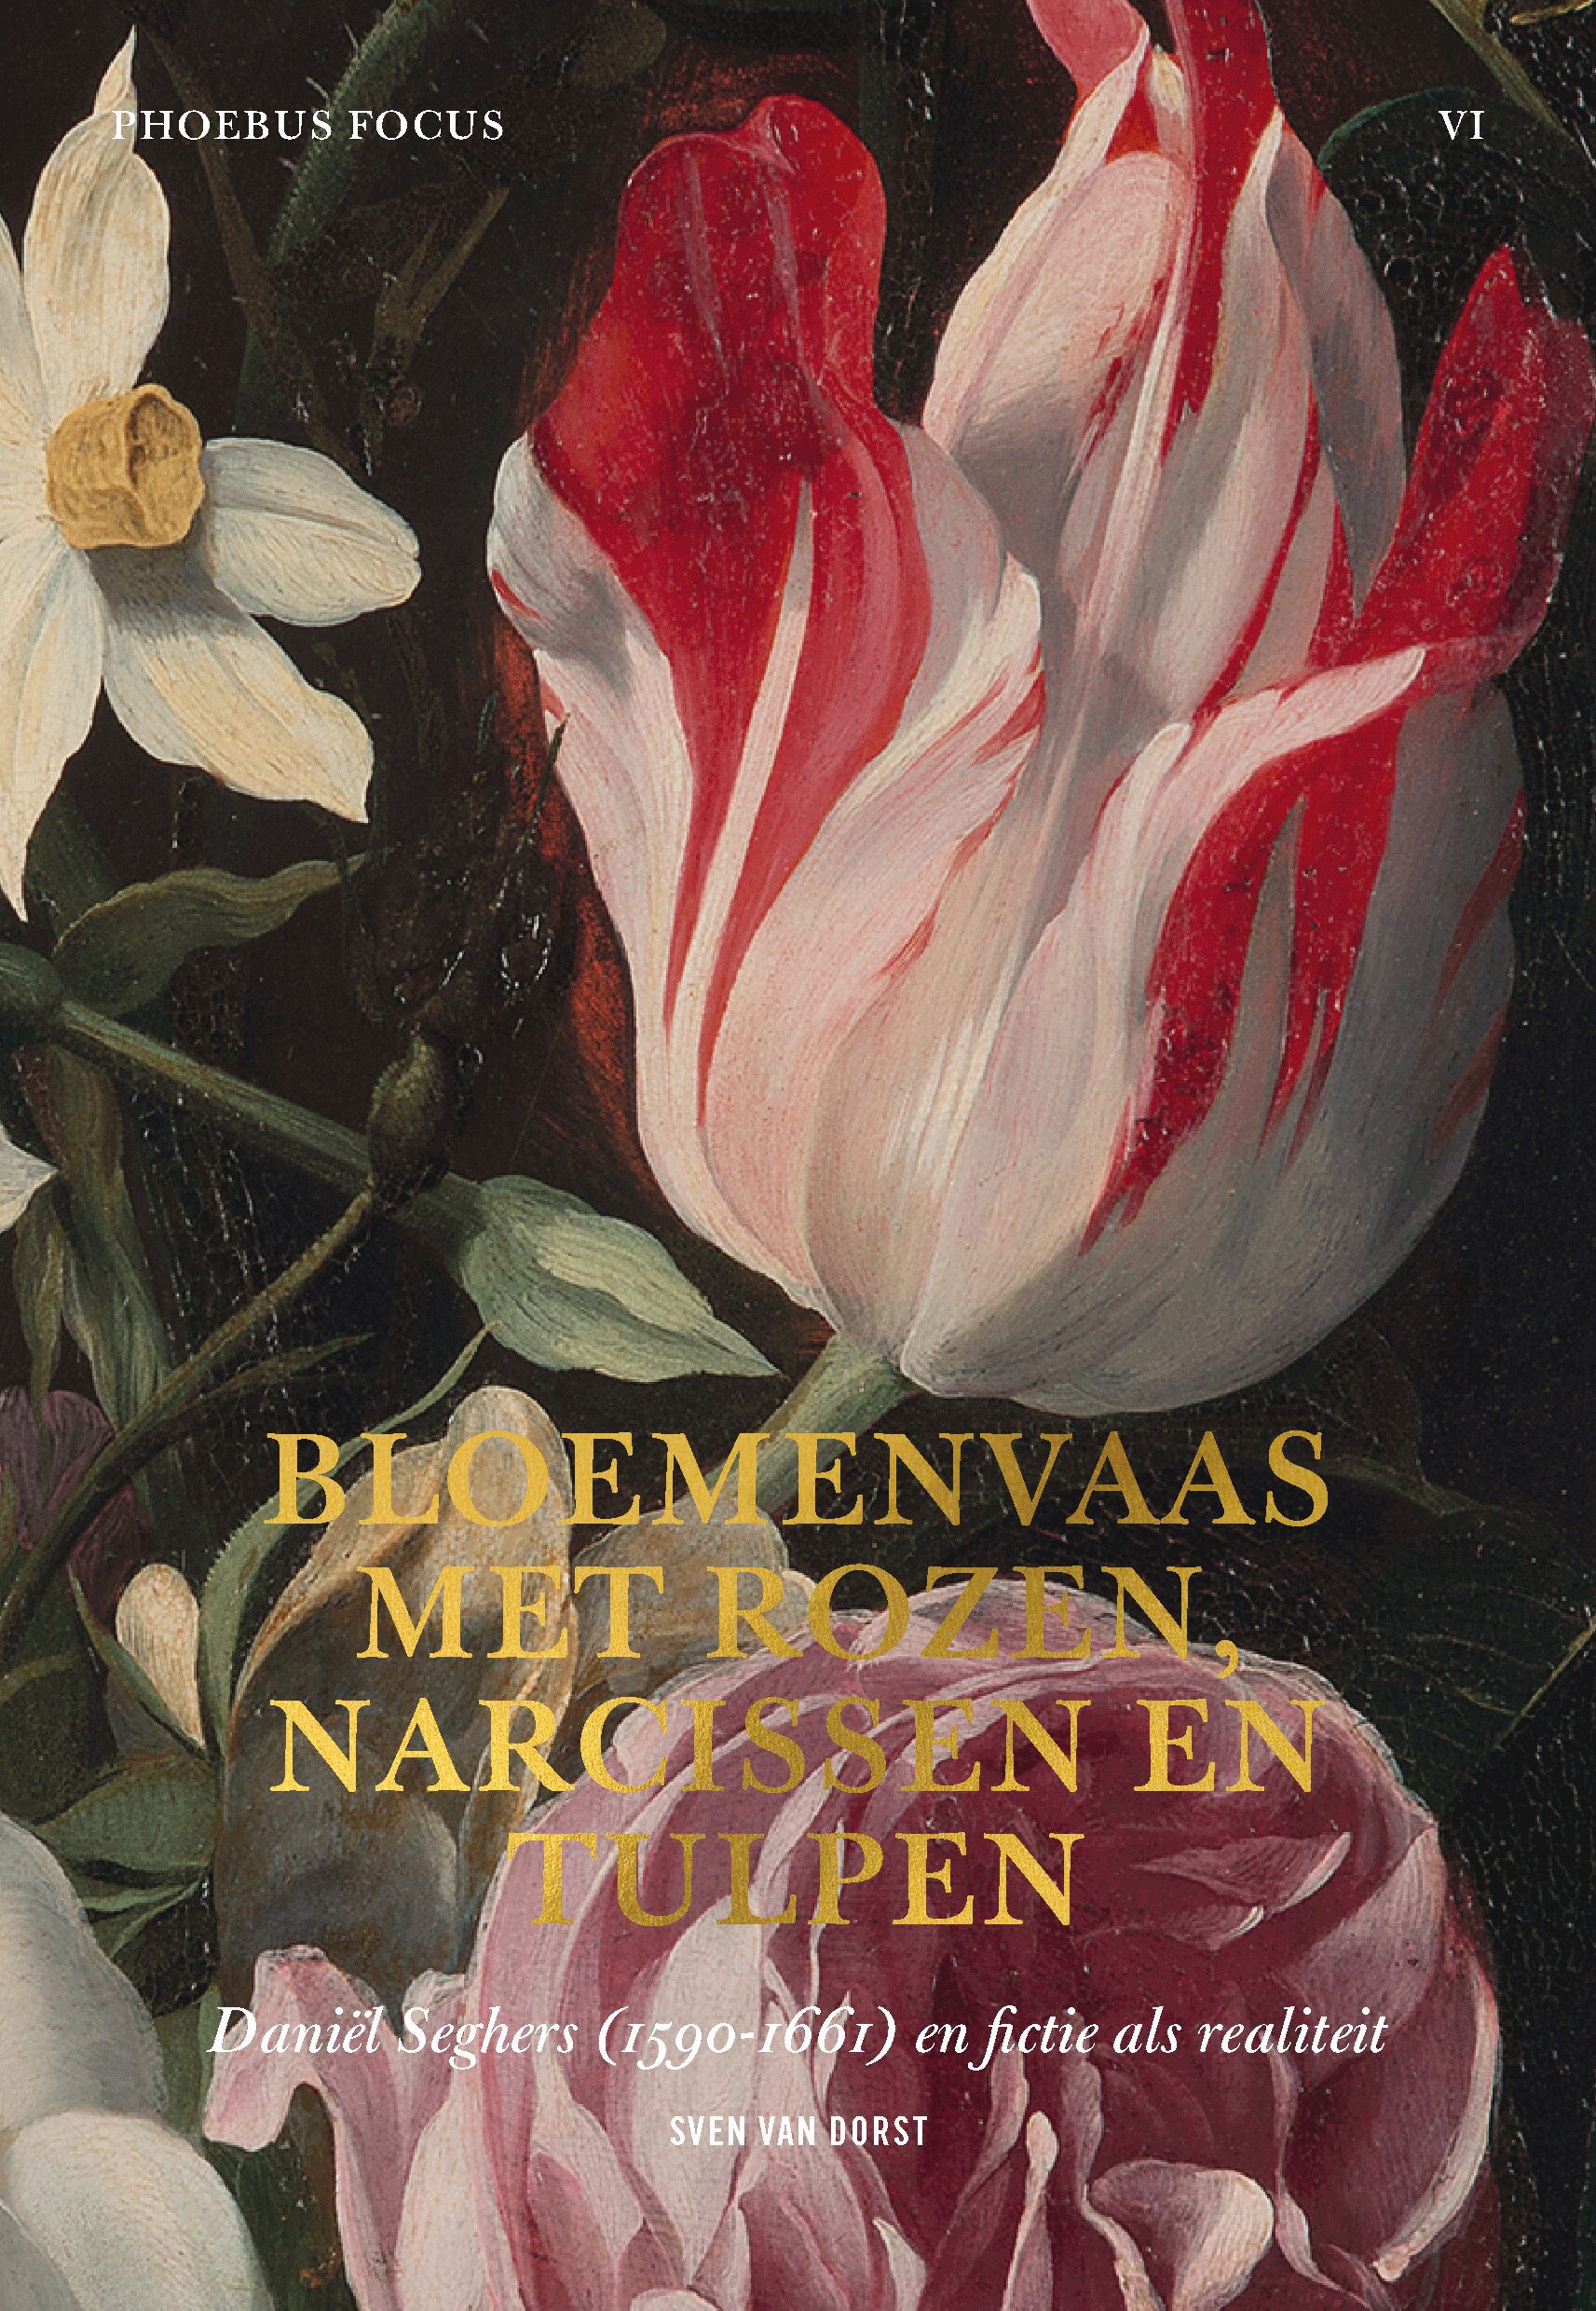 Phoebus Focus - Bloemenvaas met rozen, narcissen en tulpen